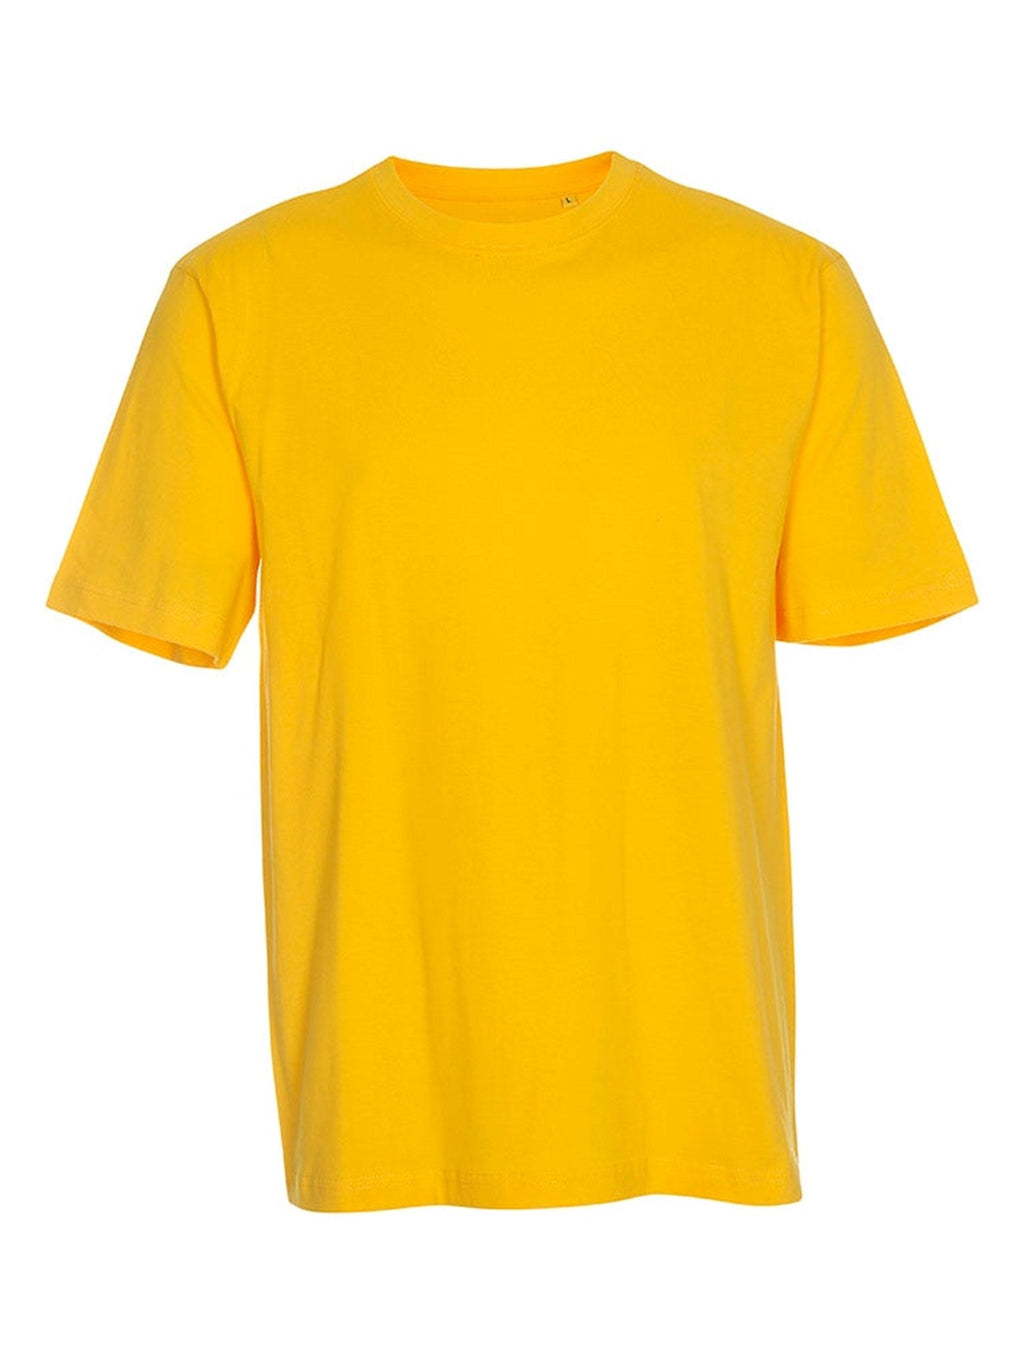 Negabaritiniai marškinėliai - geltoni